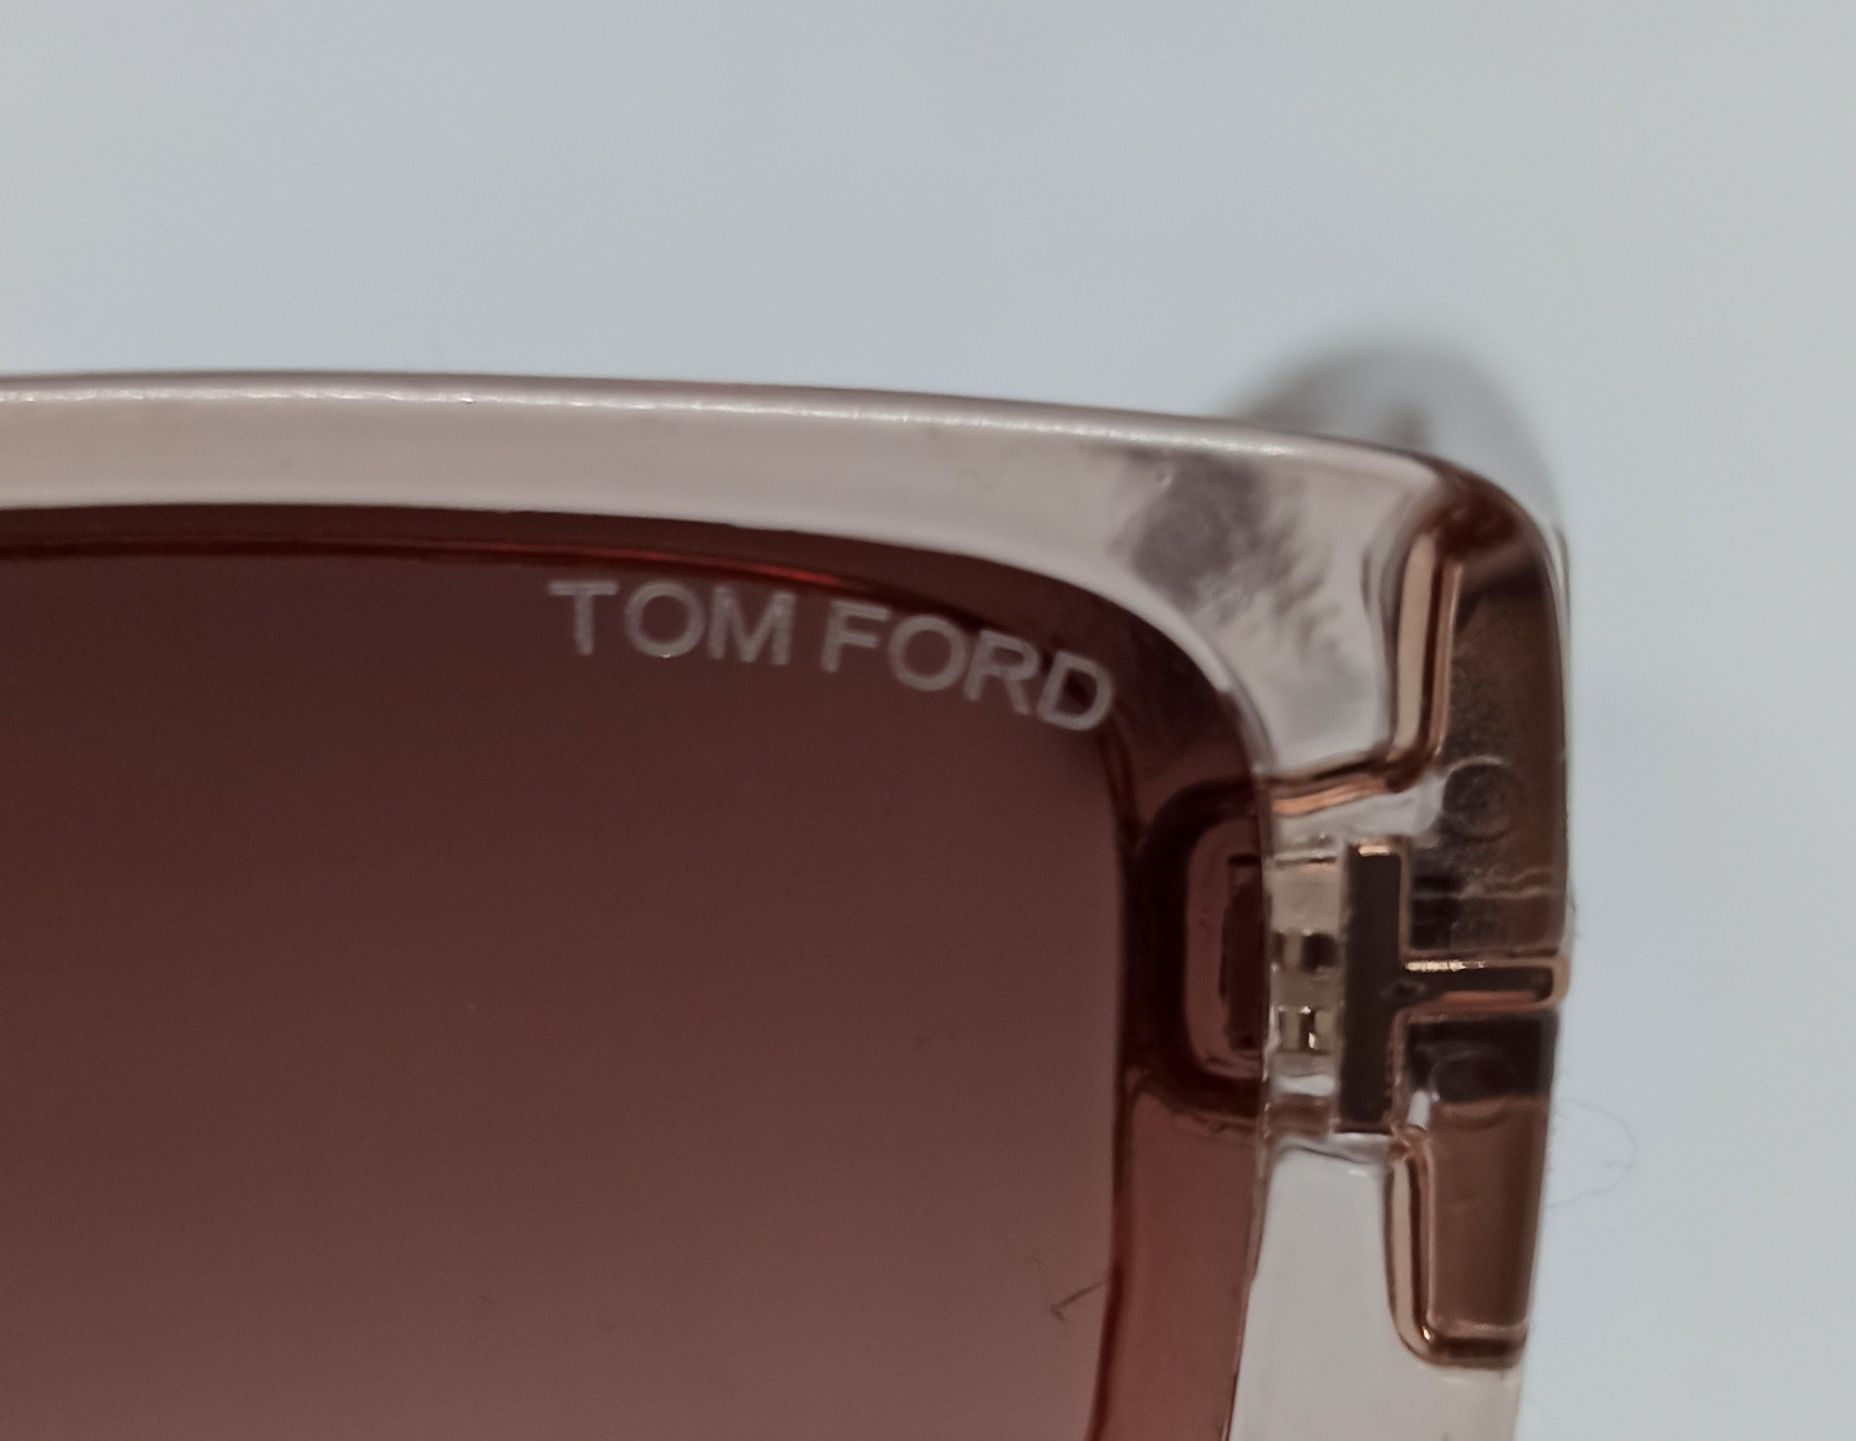 Tom Ford очки женские бежево коричневый градиент в прозрачной оправе